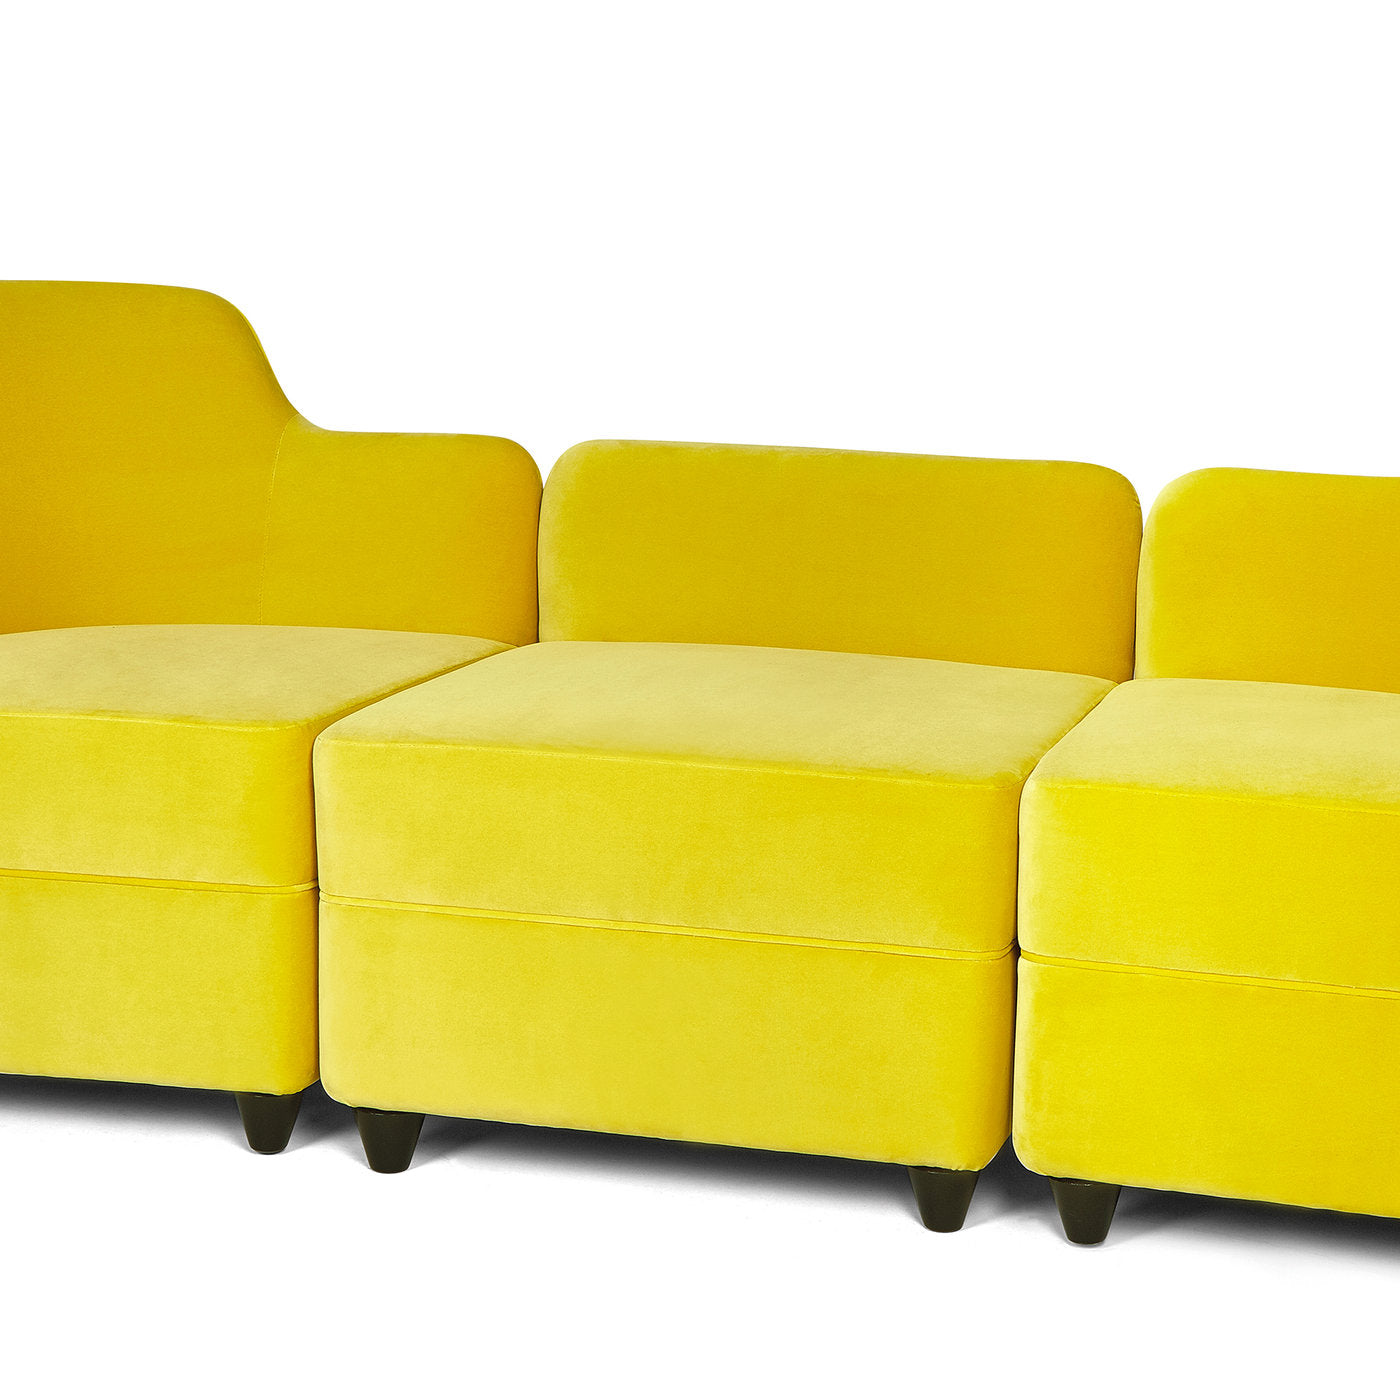 Angolo Yellow Pouf With Backrest by Corrado Corradi Dell'Acqua - Alternative view 4